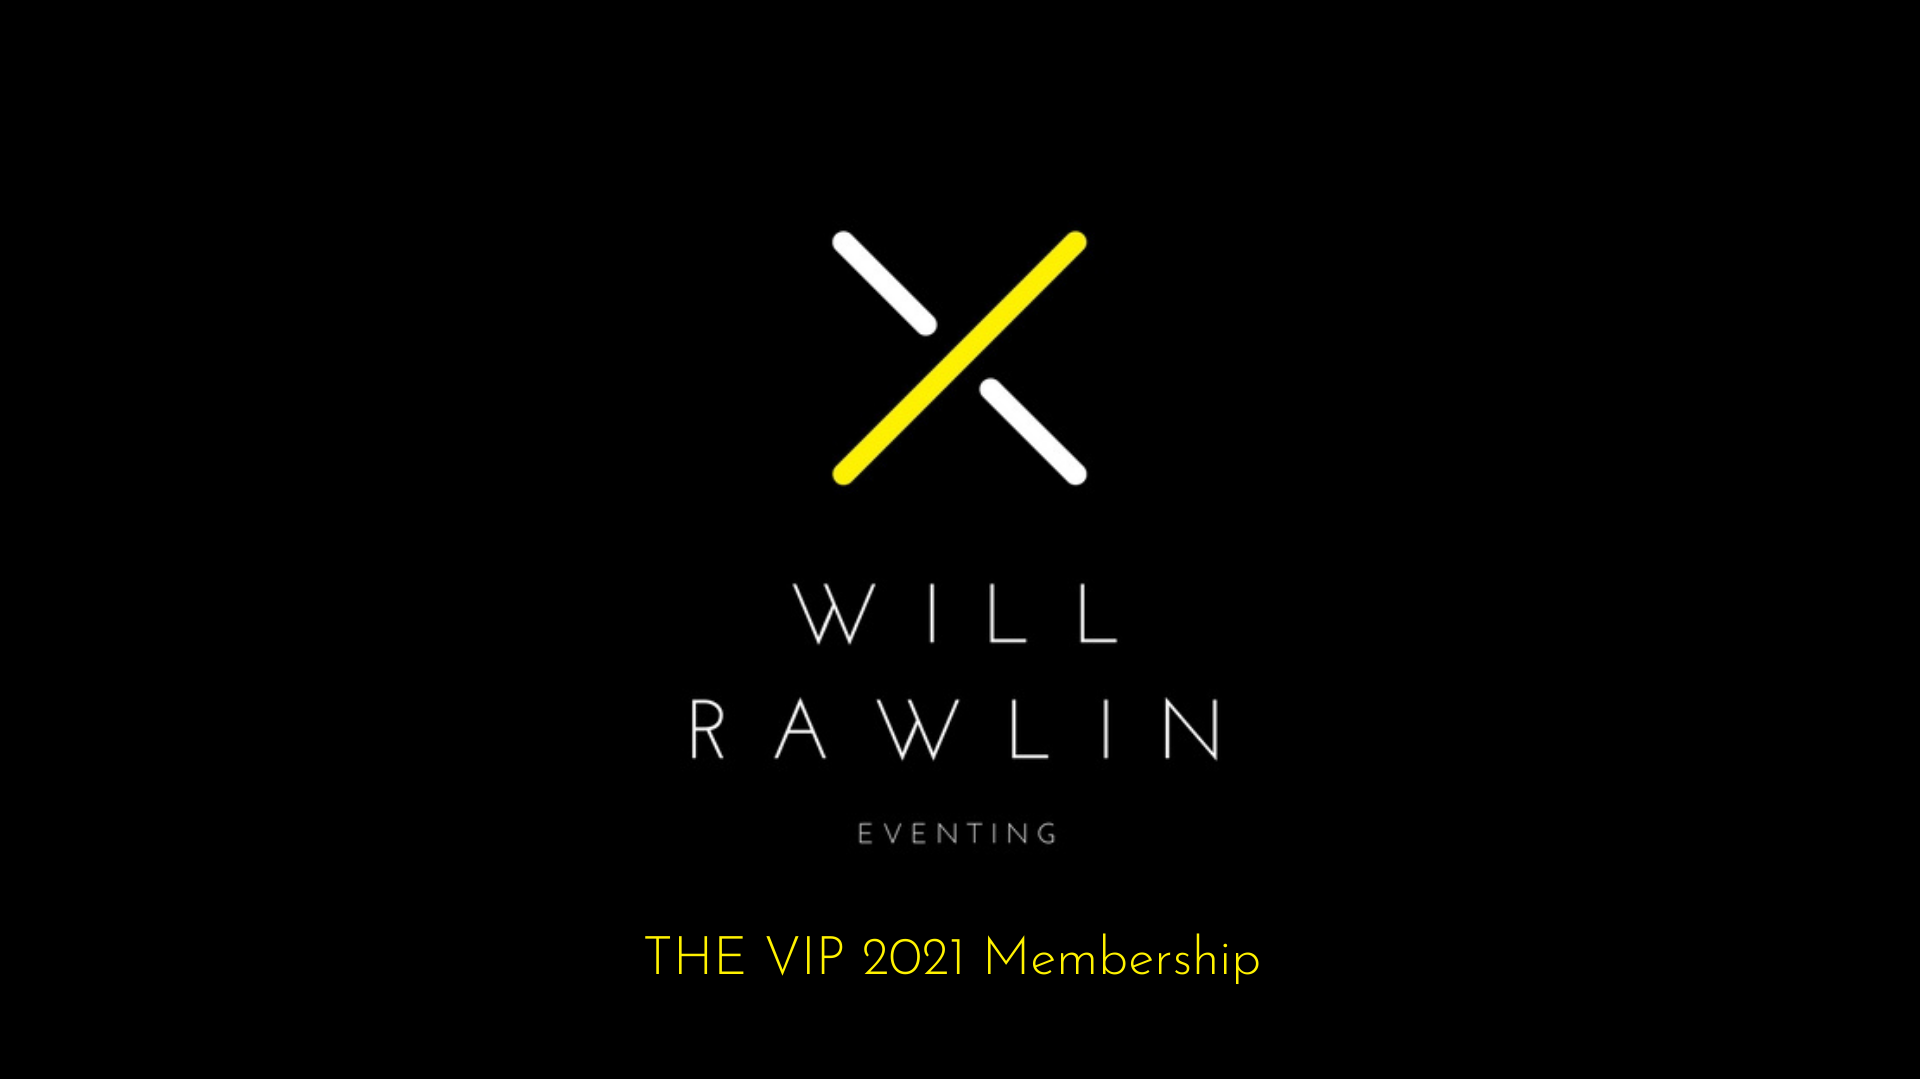 The VIP 2021 Membership